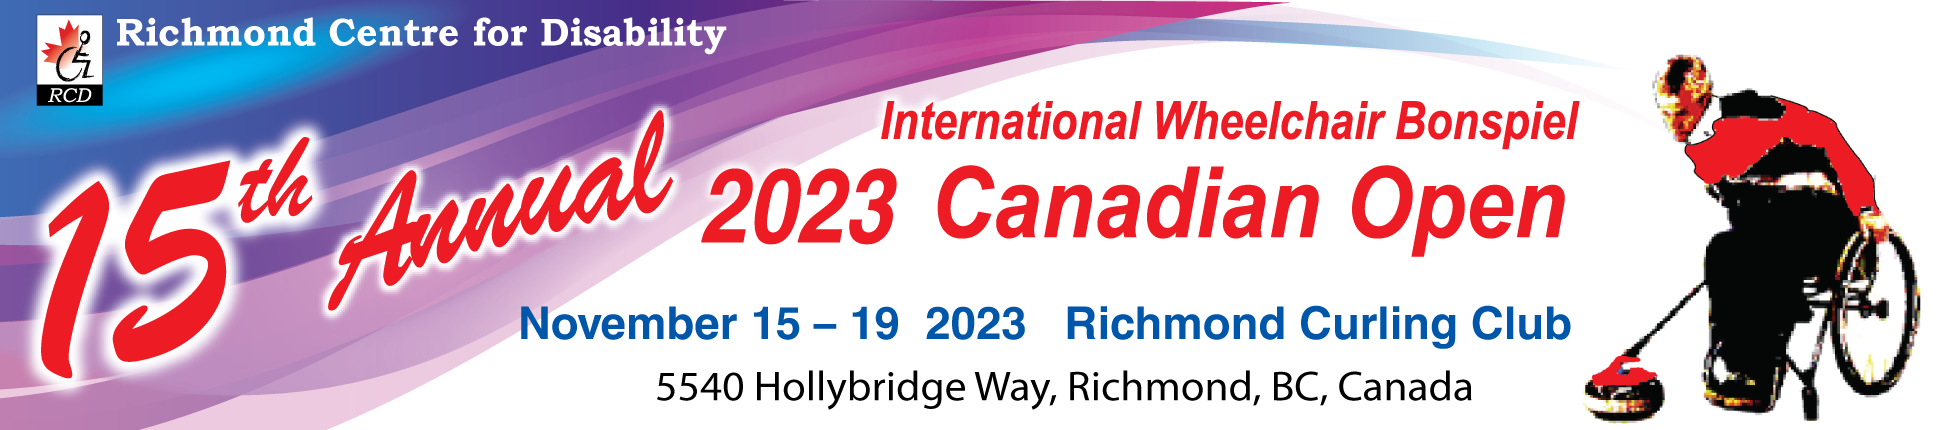 RCD 15th Anniversay International Wheelchair Bonspiel 2023 Canadian Open, Nov. 15-19, 2023, Richmond Curling Club, 5540 Hollybridge Way, Richmond, BC, Canada